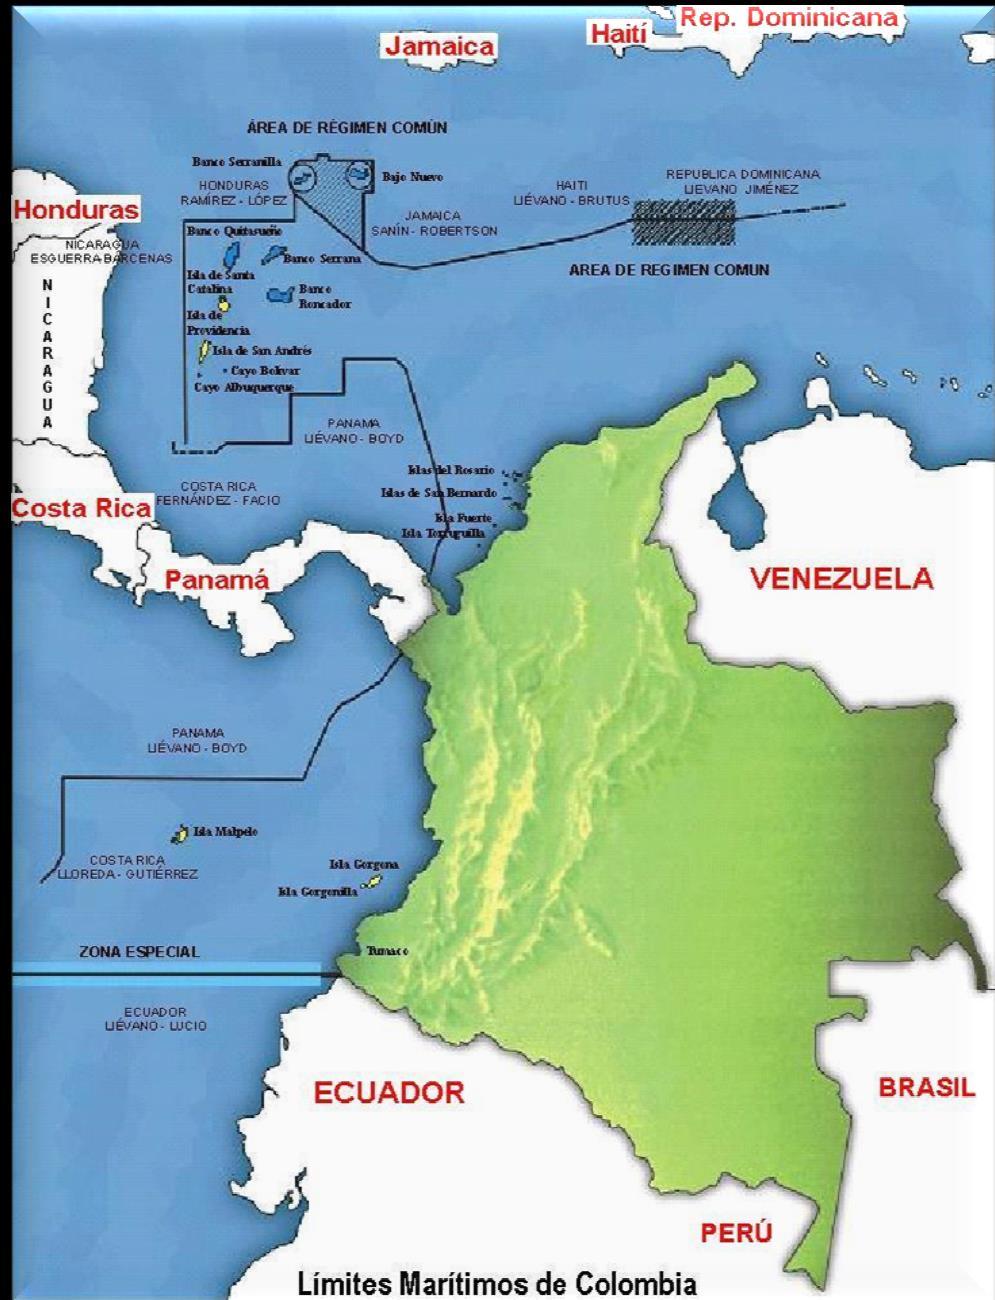 Escenario marítimo 928.660 Km 2 44.8 % del territorio nacional 9 Fronteras marítimas 589.